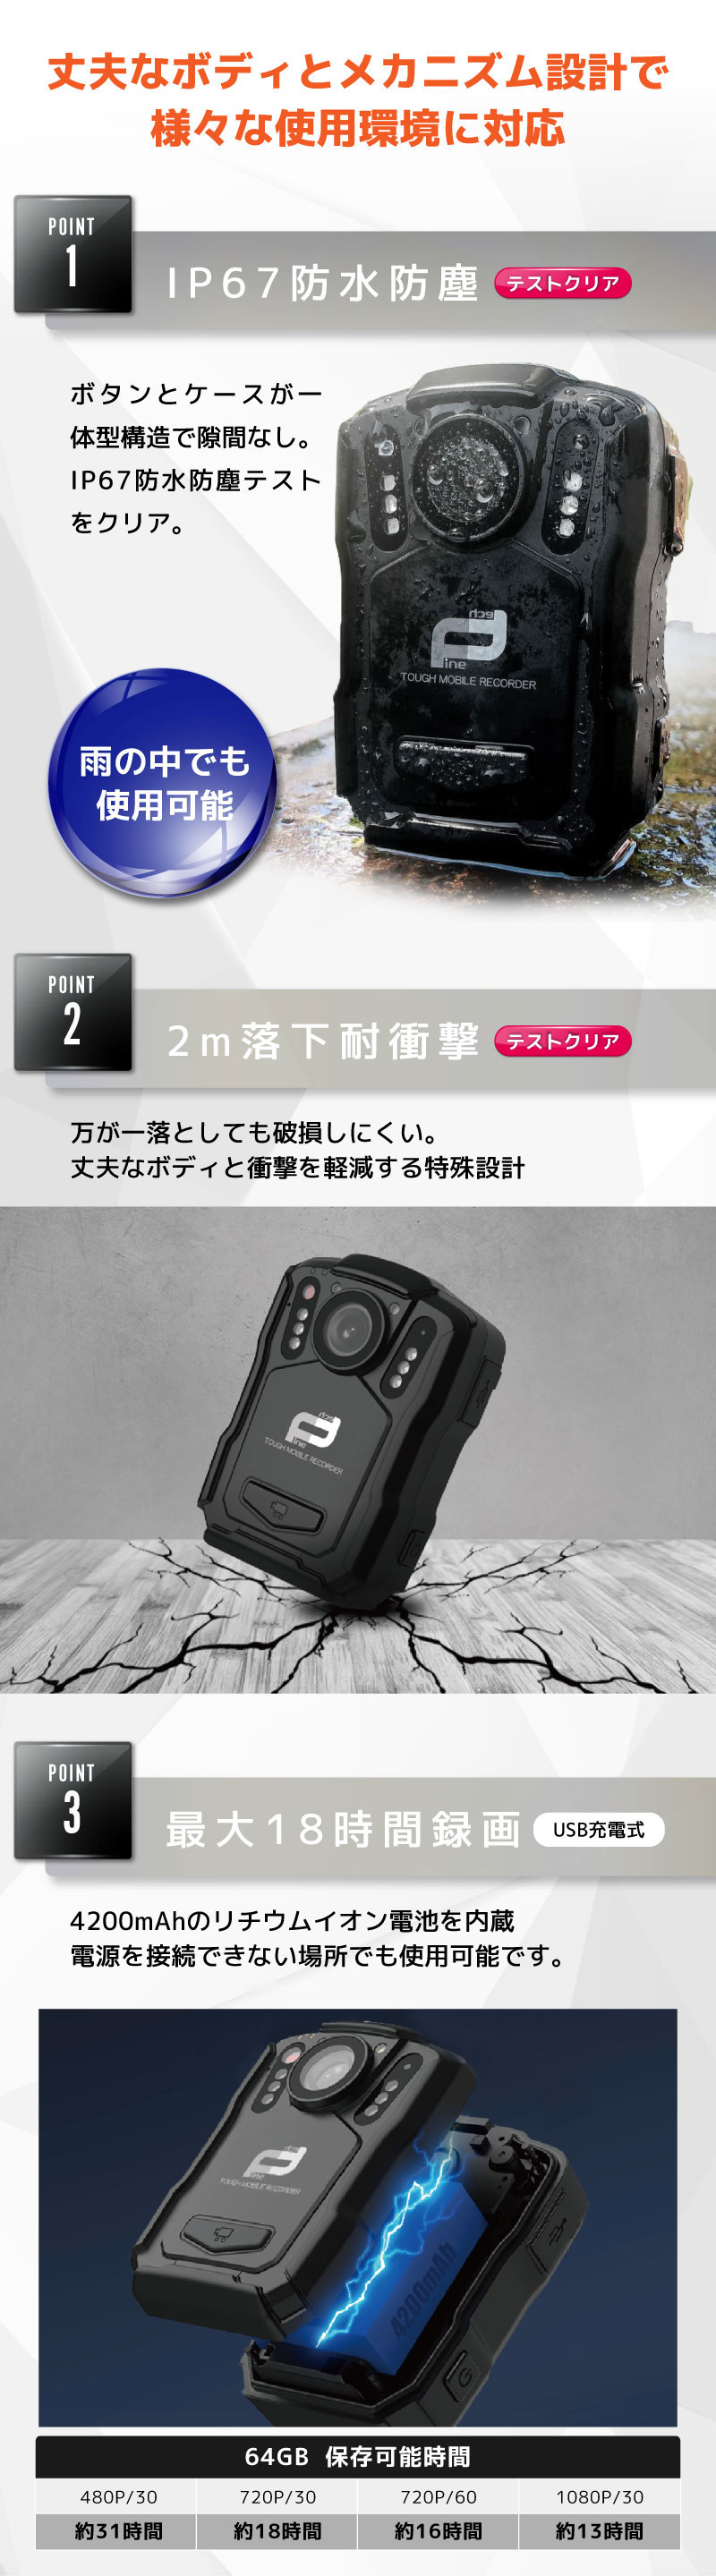 モバイルレコーダー FT-V6【64GB】3